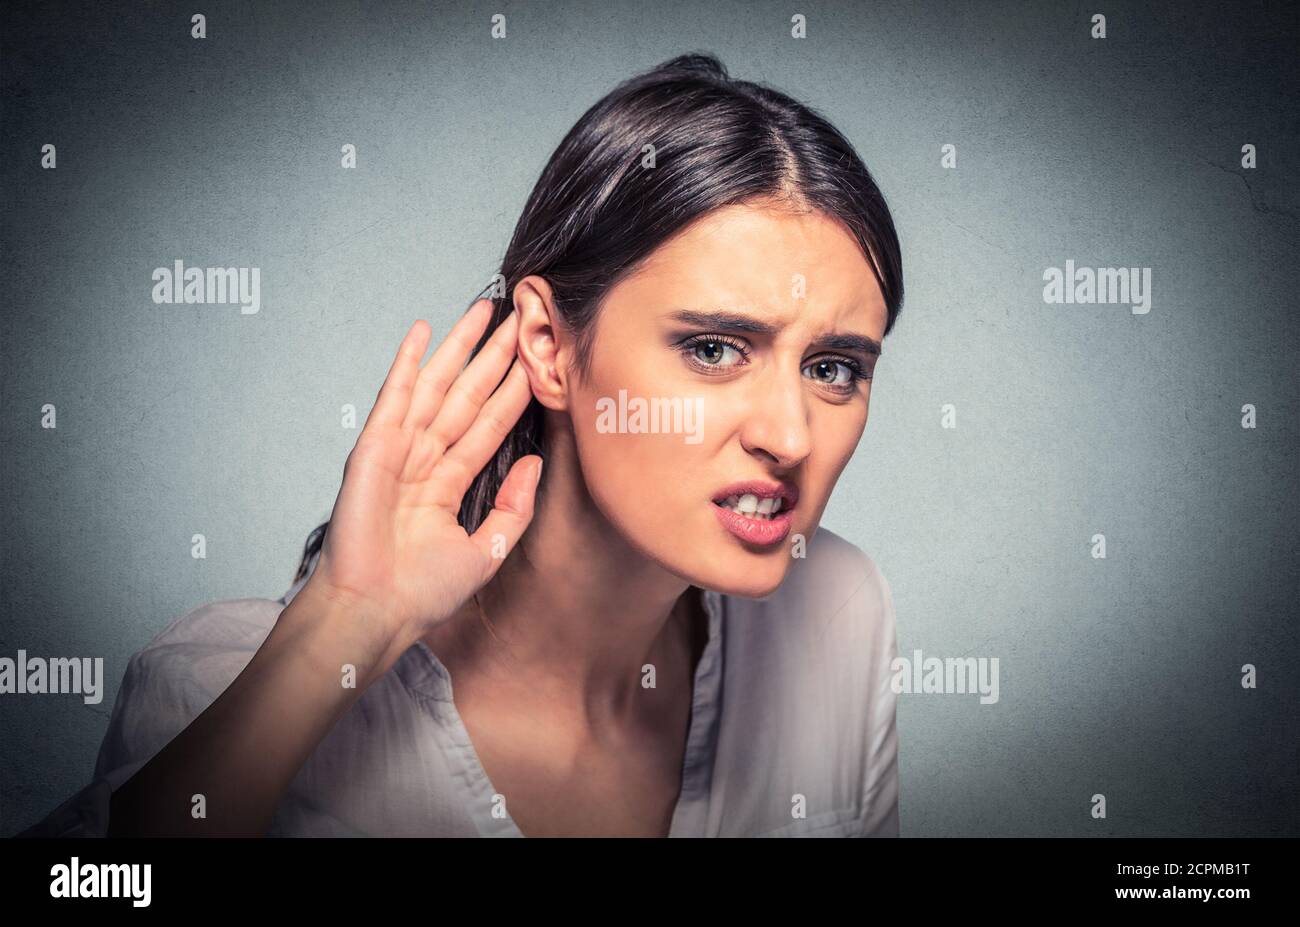 Gros plan portrait jeune femme nez gestuelle de la main à l'oreille essayant d'écouter attentivement sur juteuse conversation sur fond gris isolé. Visage humain ex Banque D'Images